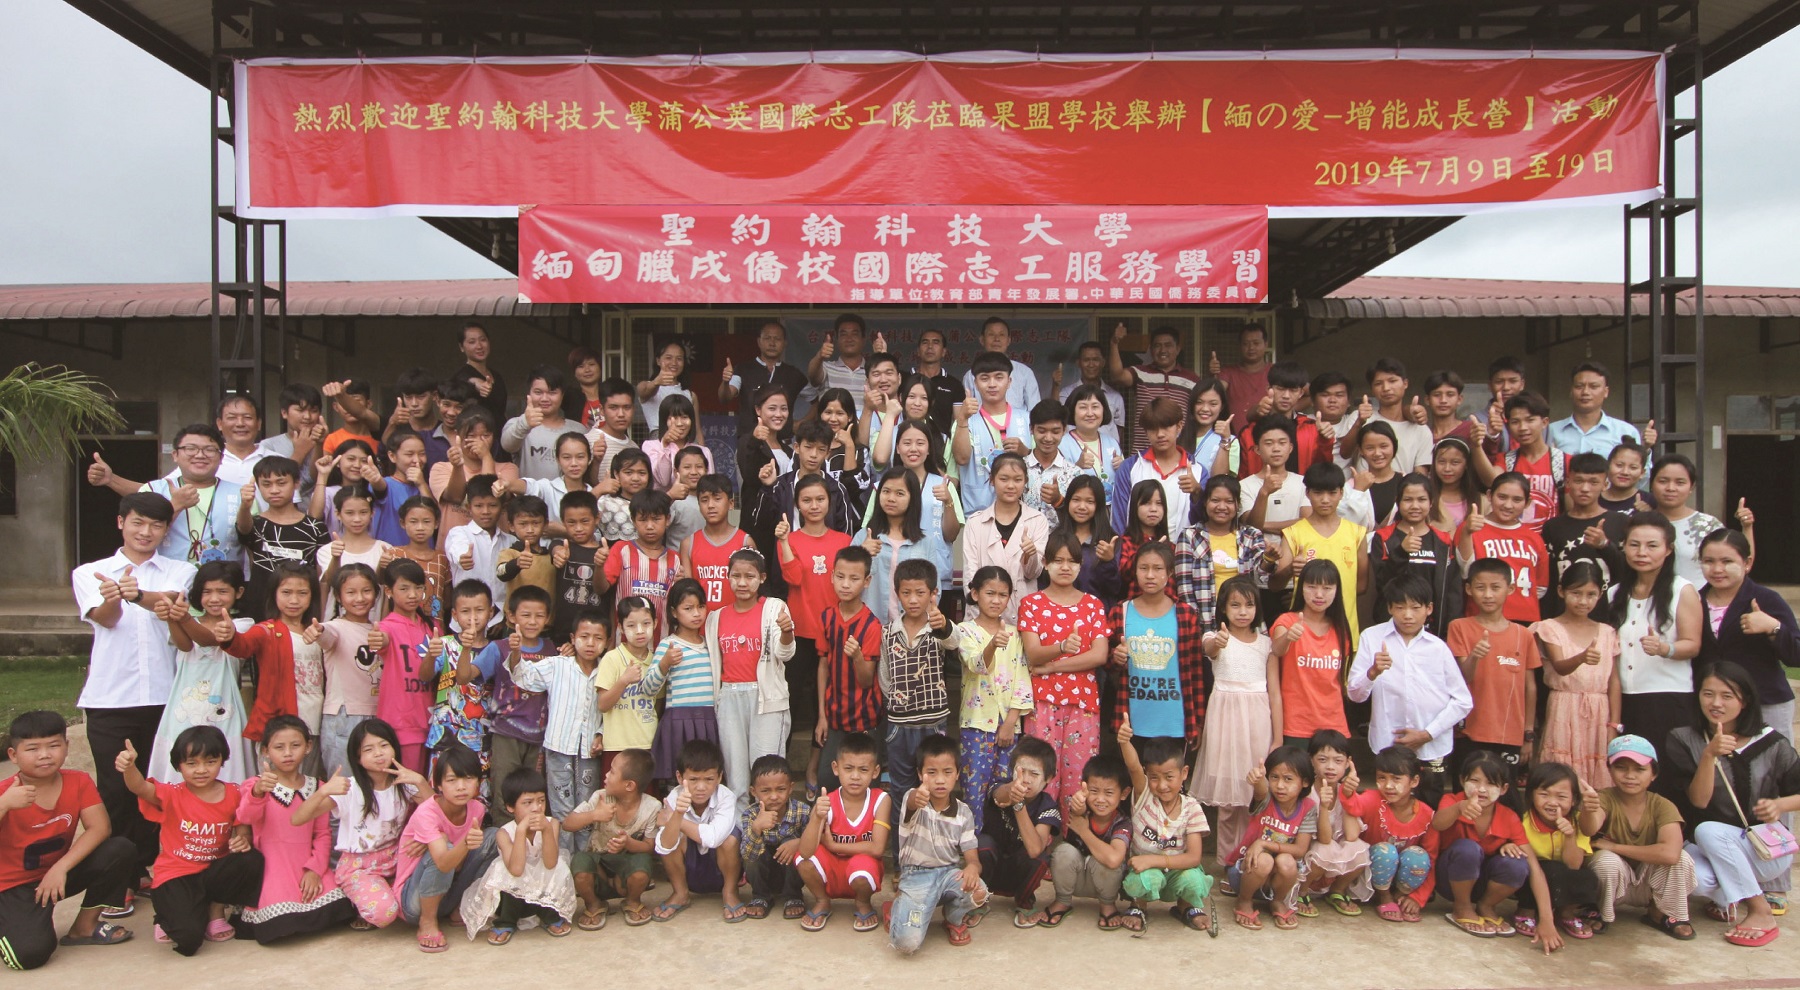 聖約翰科大國際志工團隊前往緬甸臘戌果盟學校進行服務